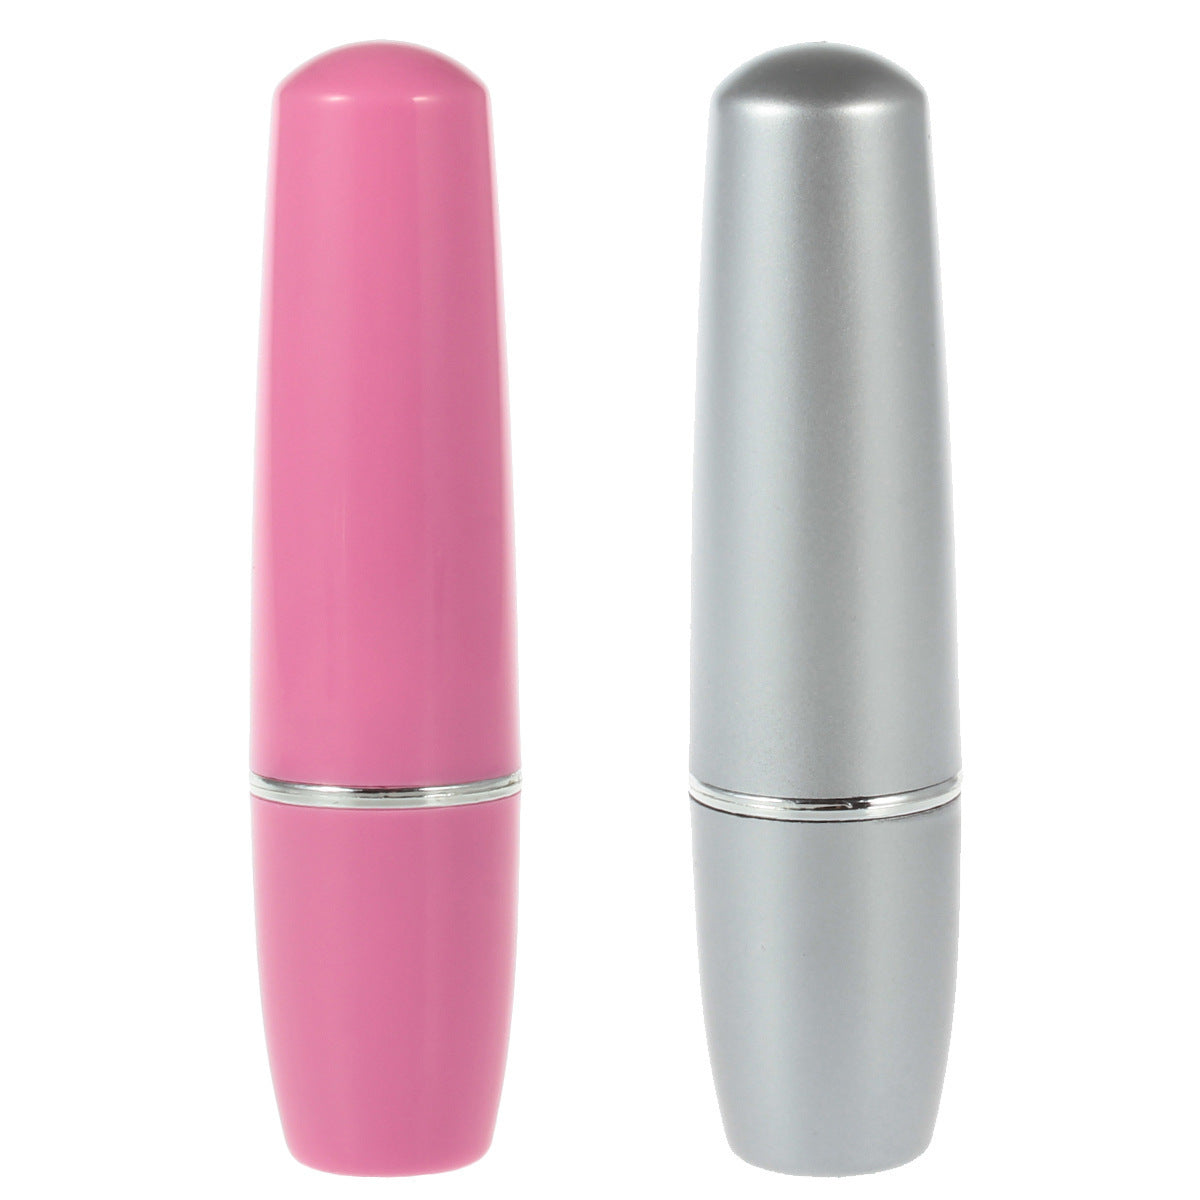 Lipstick Vibrator - AAA Battery